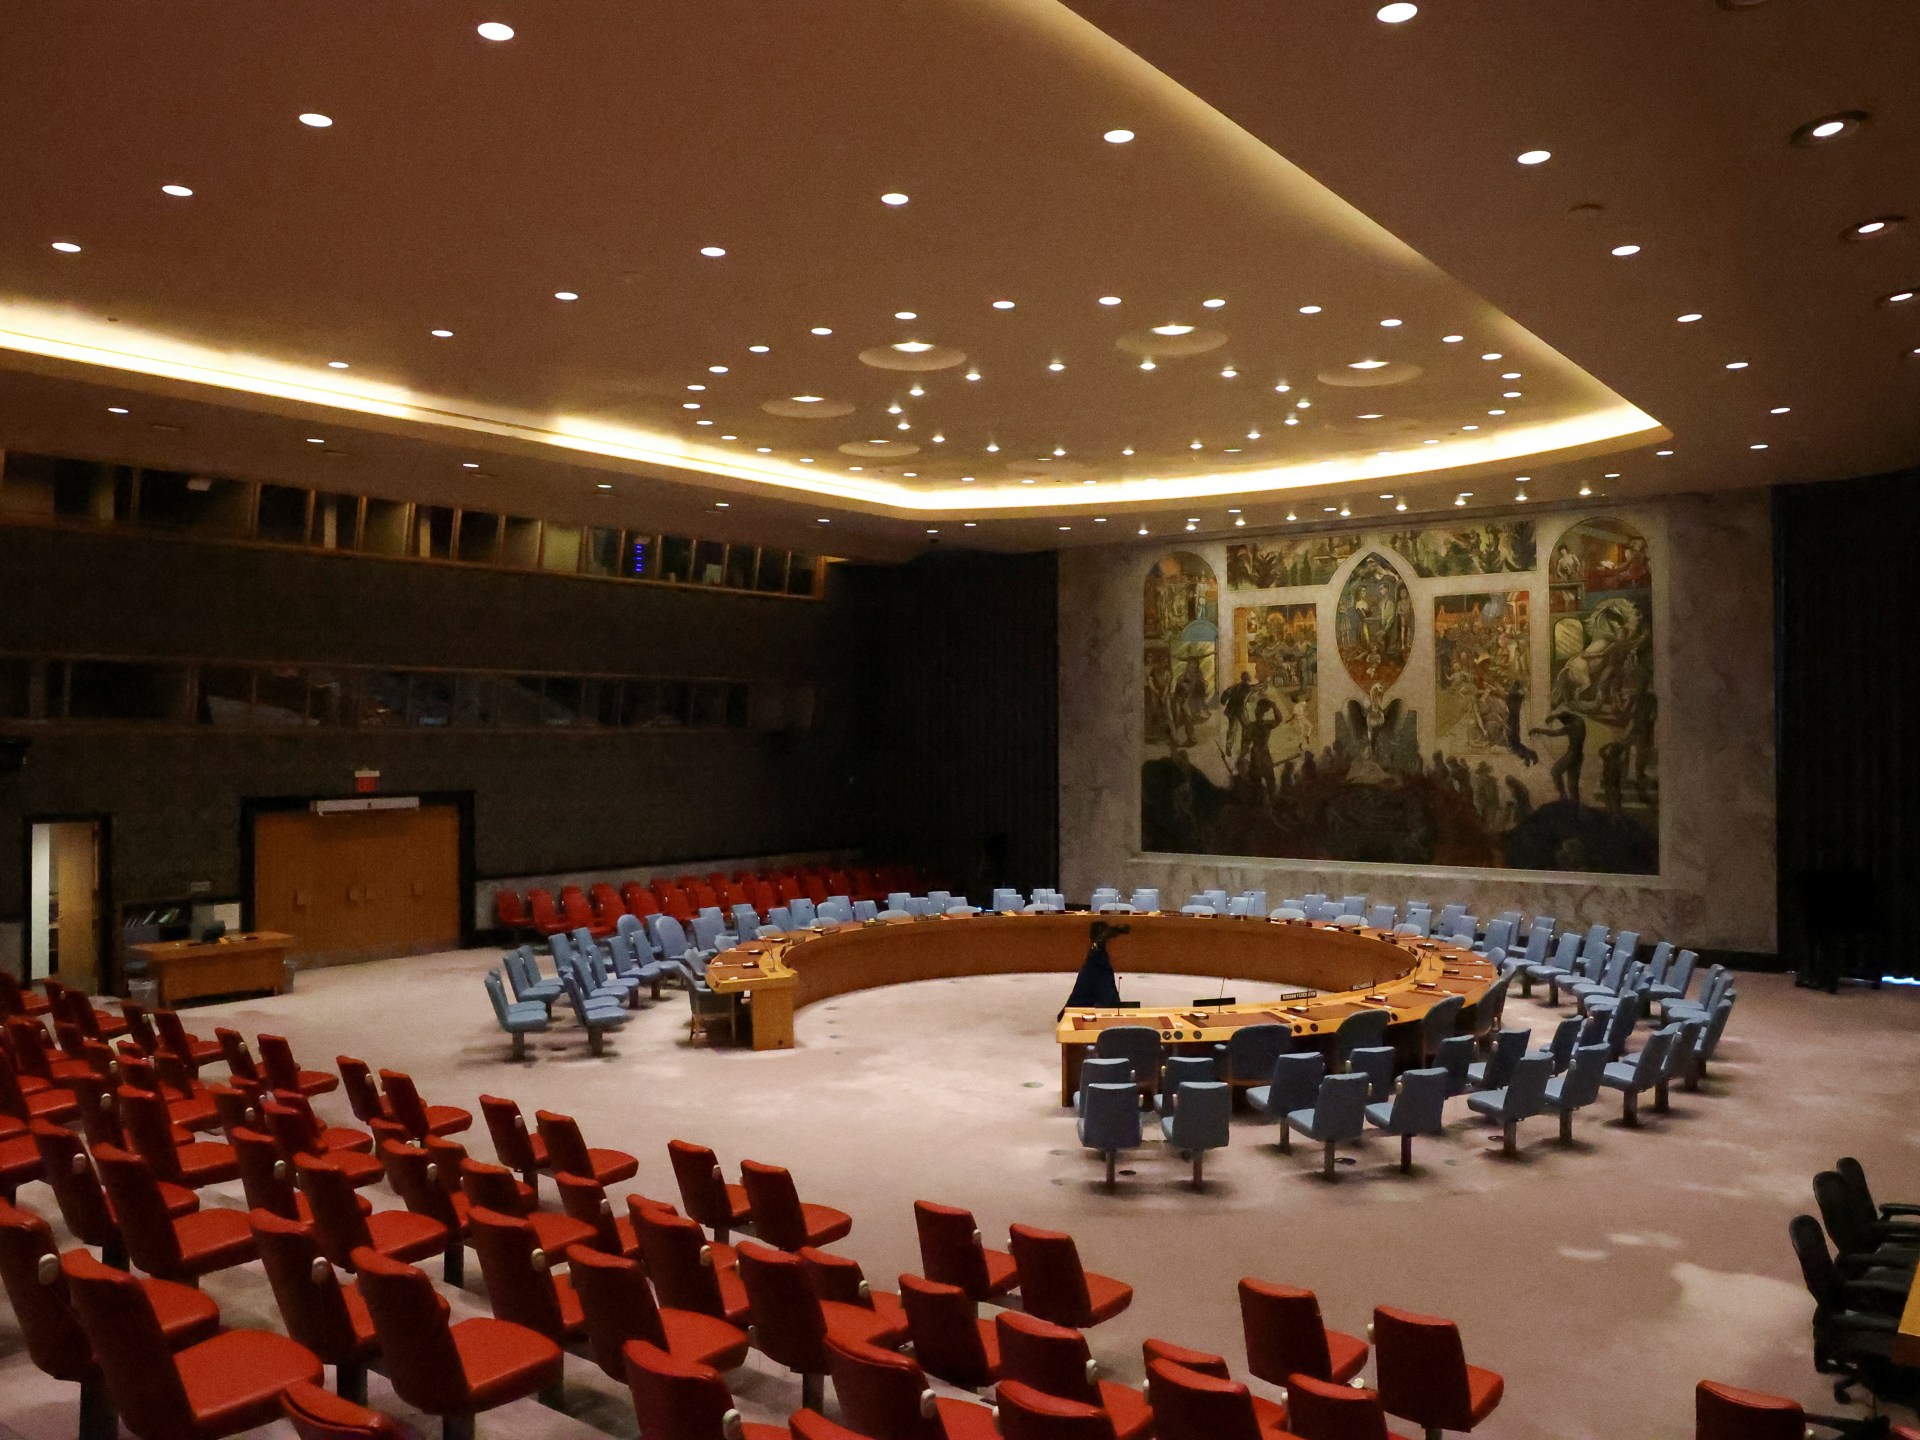 مجلس الأمن يرجئ إلى اليوم التصويت على مشروع قرار بشأن غزة | أخبار – البوكس نيوز